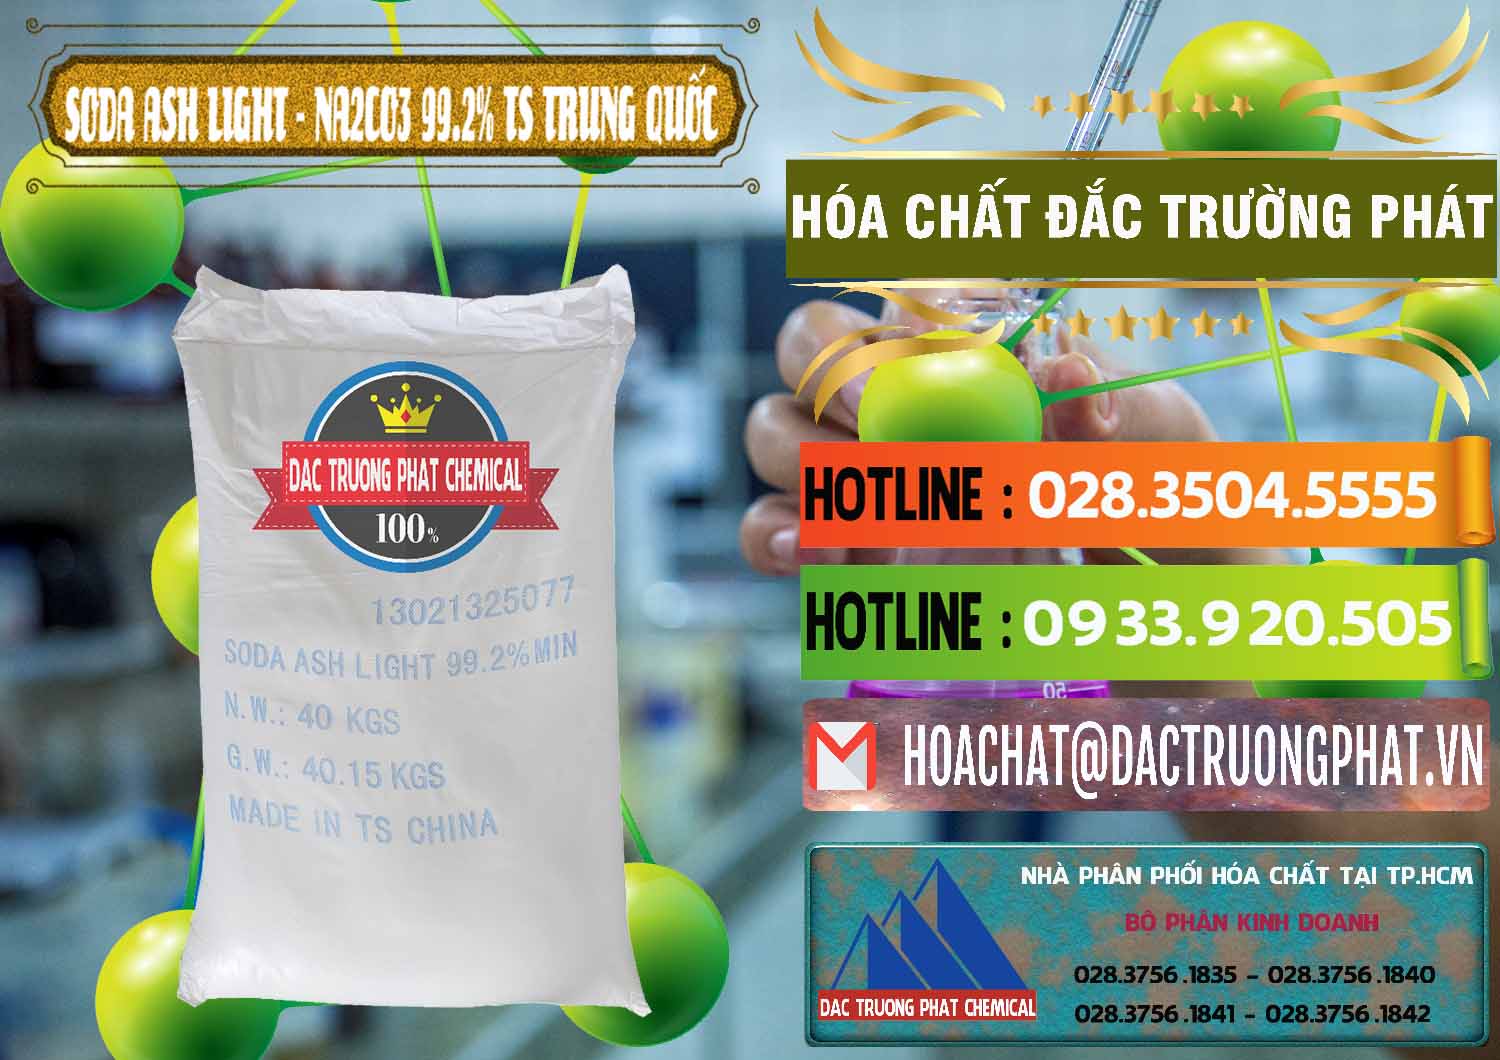 Chuyên bán và cung cấp Soda Ash Light - NA2CO3 TS Trung Quốc China - 0221 - Cty phân phối & cung cấp hóa chất tại TP.HCM - cungcaphoachat.com.vn